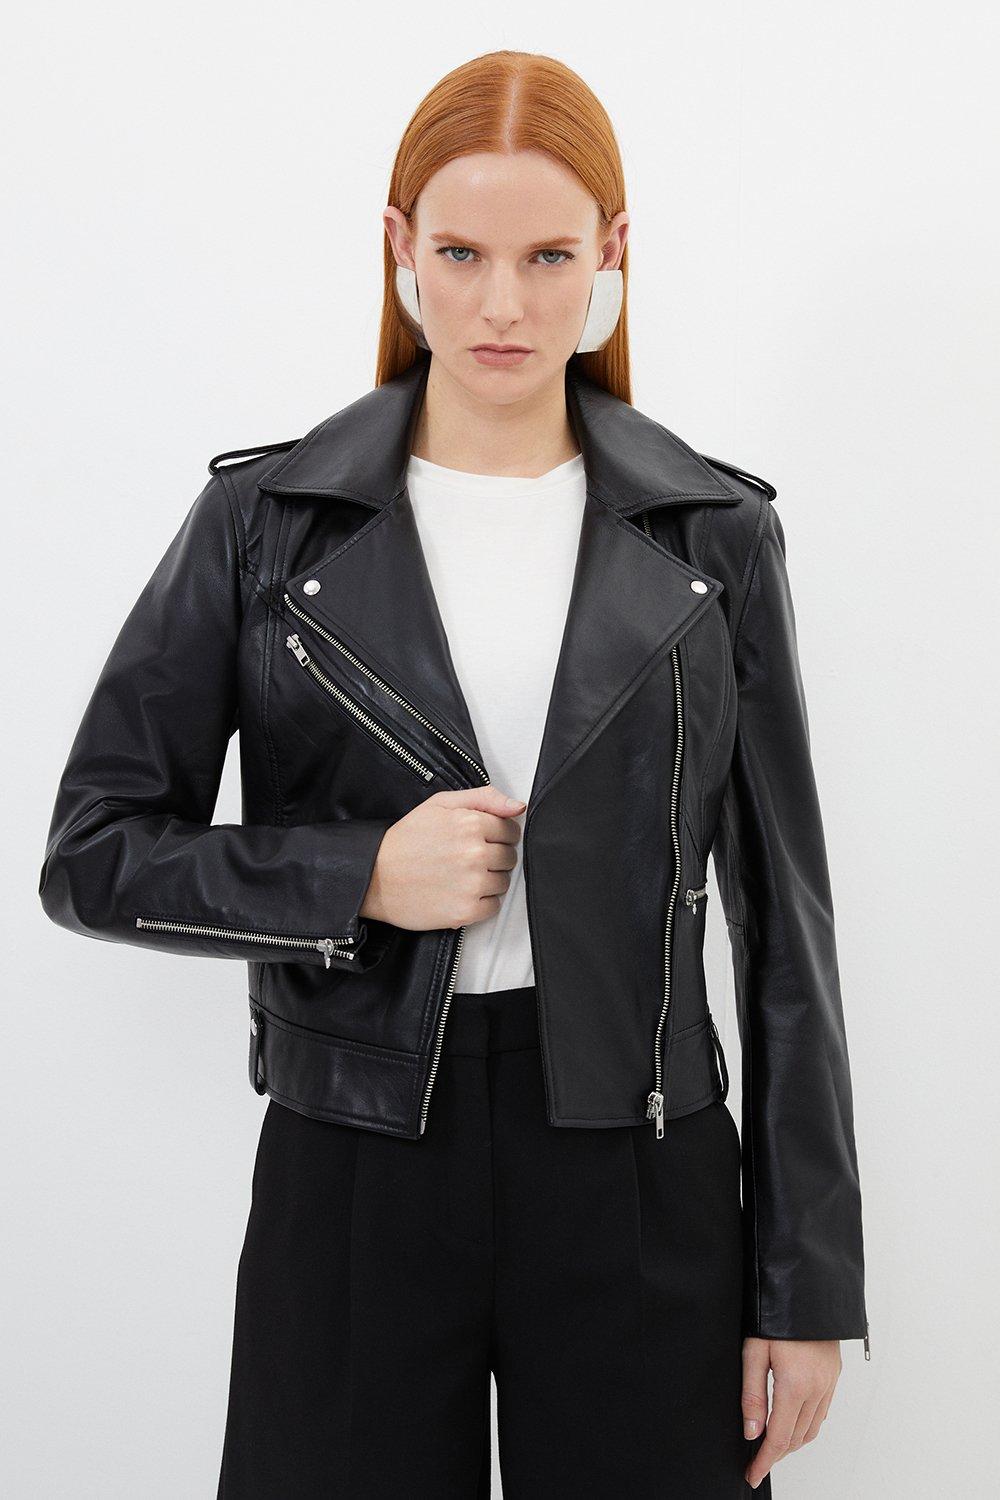 Кожаная байкерская куртка с молнией Karen Millen, черный женская байкерская куртка кожаная укороченная куртка приталенная черная кожаная куртка верхняя одежда из натуральной кожи